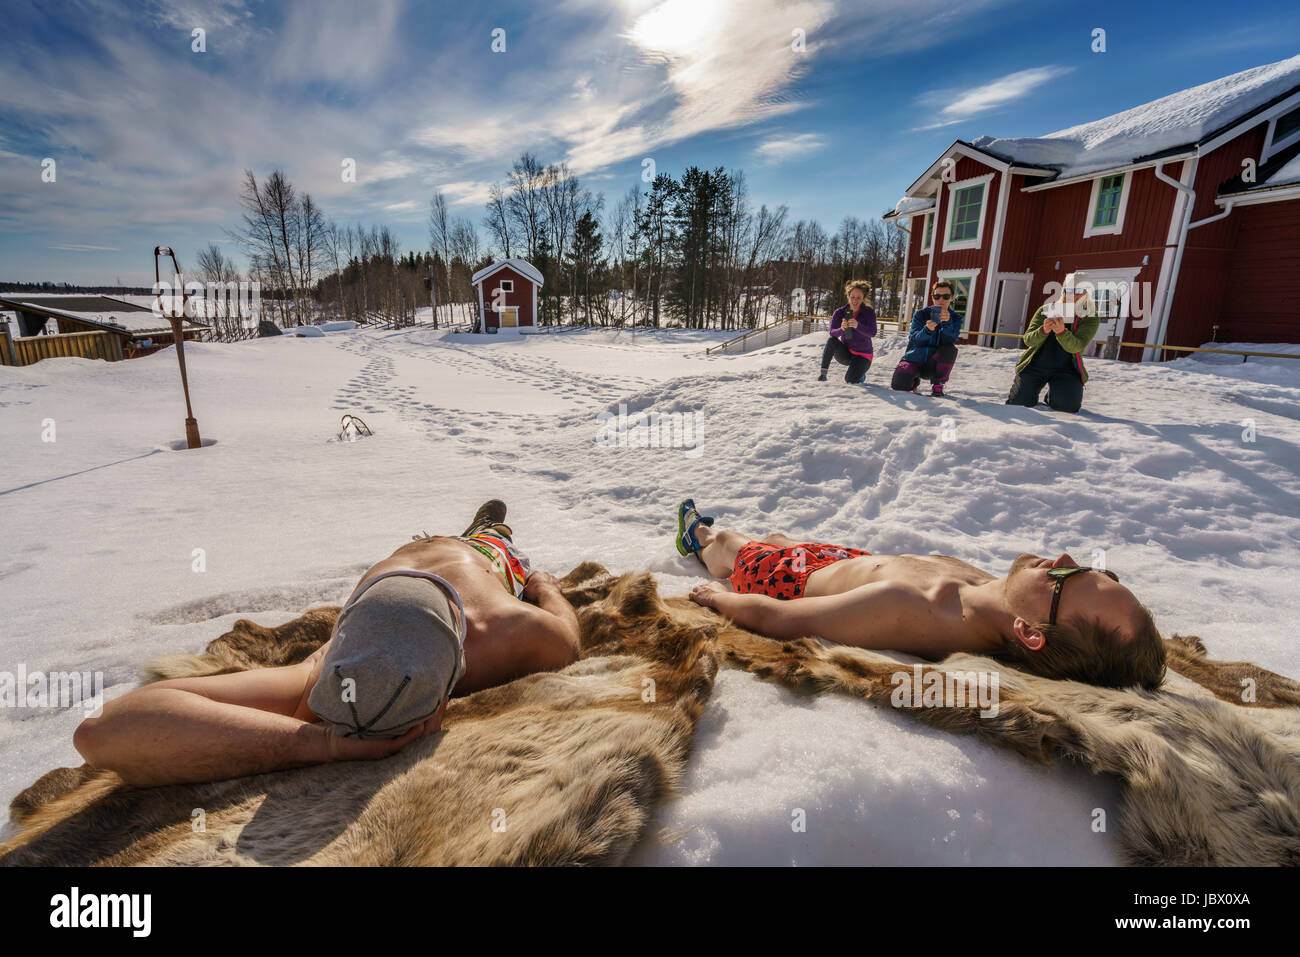 Les touristes s'amuser à prendre des photos des gens du soleil. For Kangos est une localité située dans la municipalité de Pajala, comté de Norrbotten, en Laponie suédoise. Banque D'Images